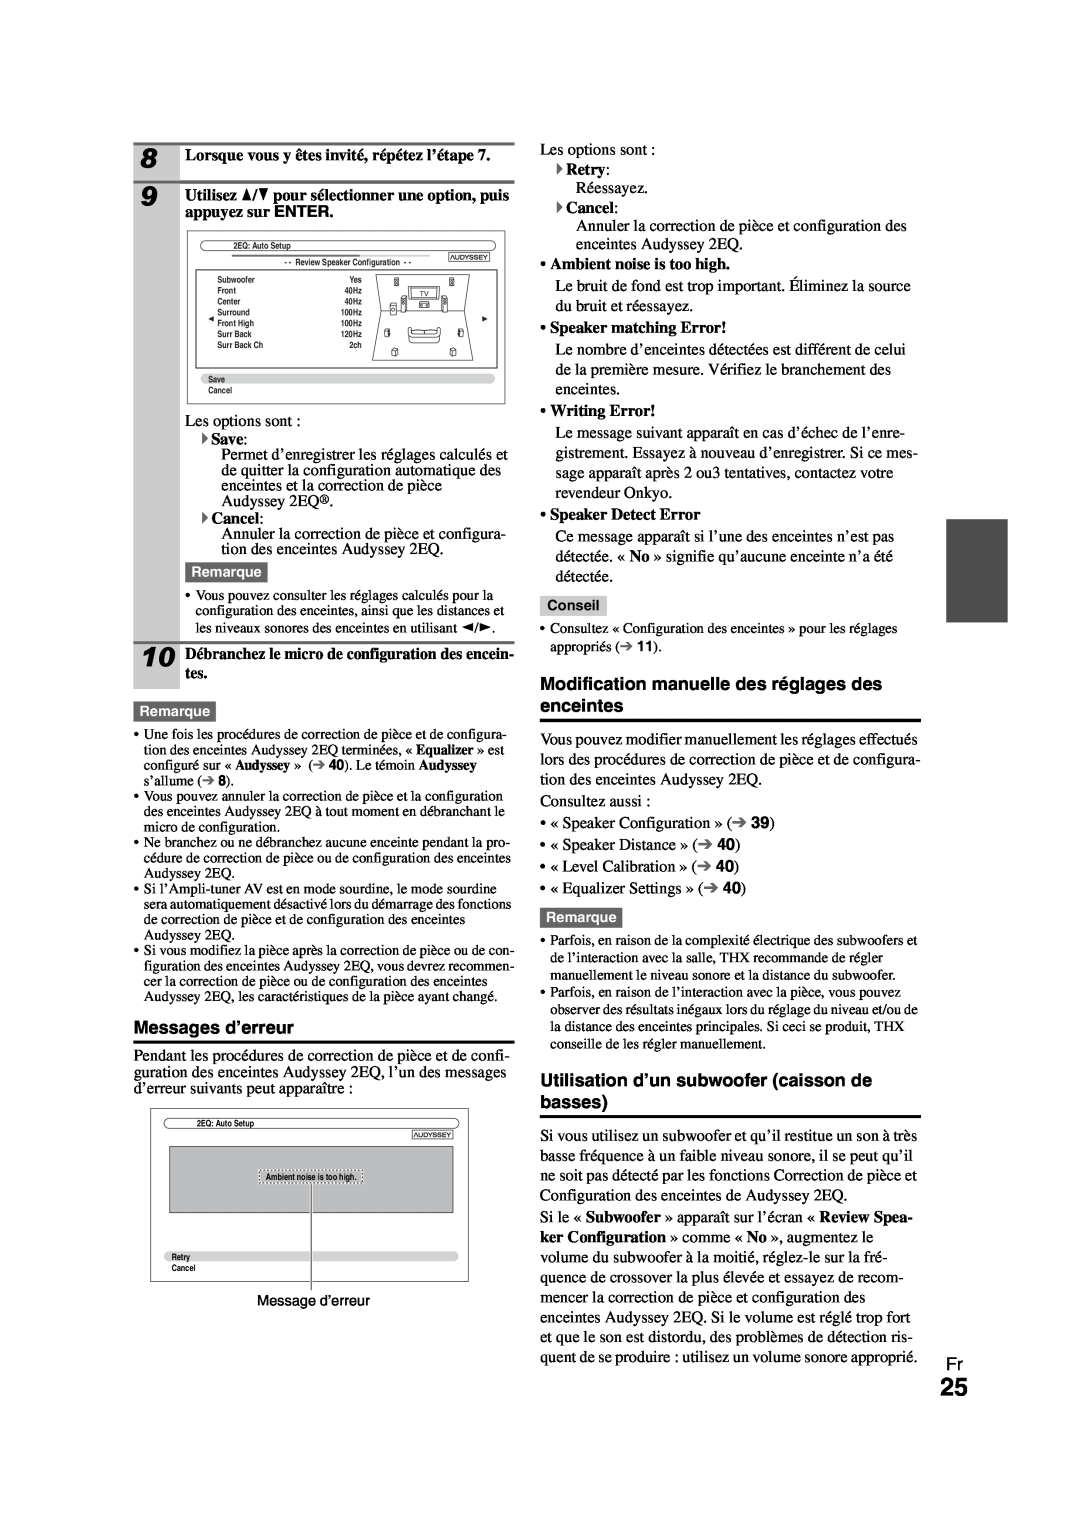 Onkyo HT-R980 instruction manual Messages d’erreur, Modification manuelle des réglages des enceintes 